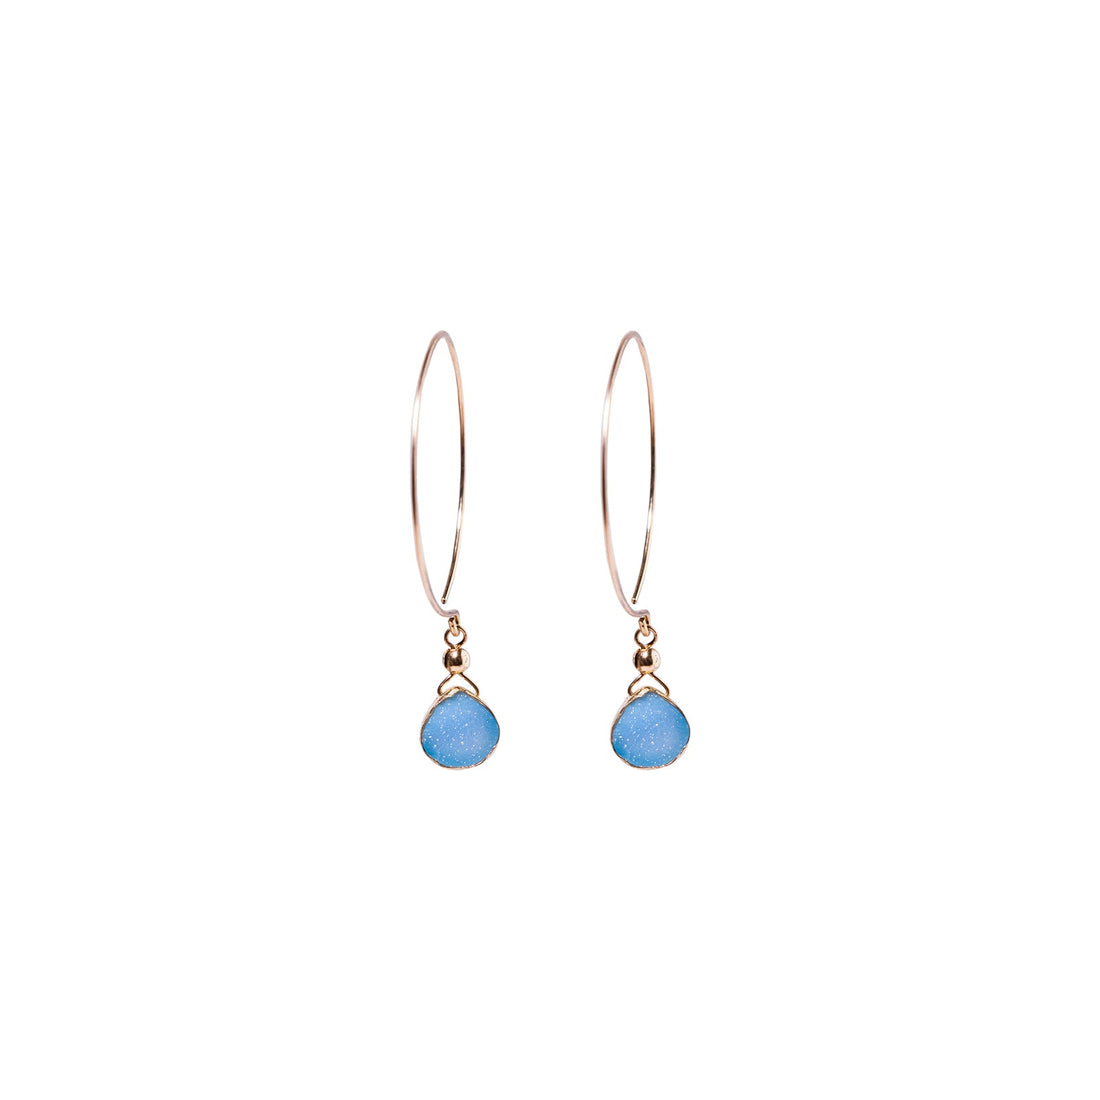 Kelly Earrings, Blue Druzy Pear with Gold Bezel Earrings Sayulita Sol 